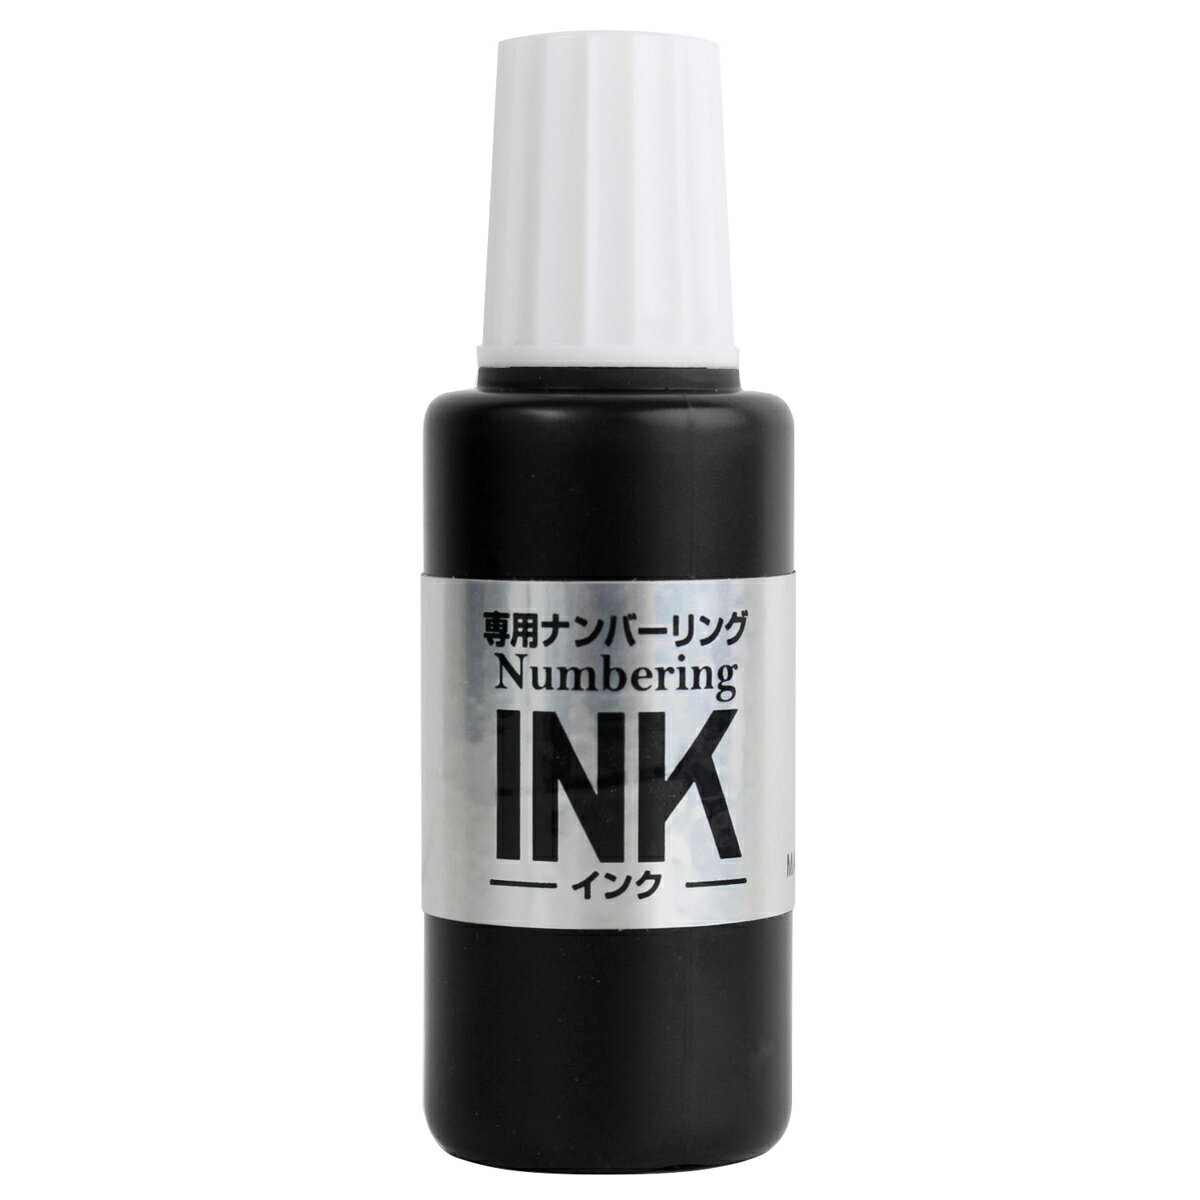 【PLUS】 ナンバーリング用インク ブラック IJ-900(30796) プラス